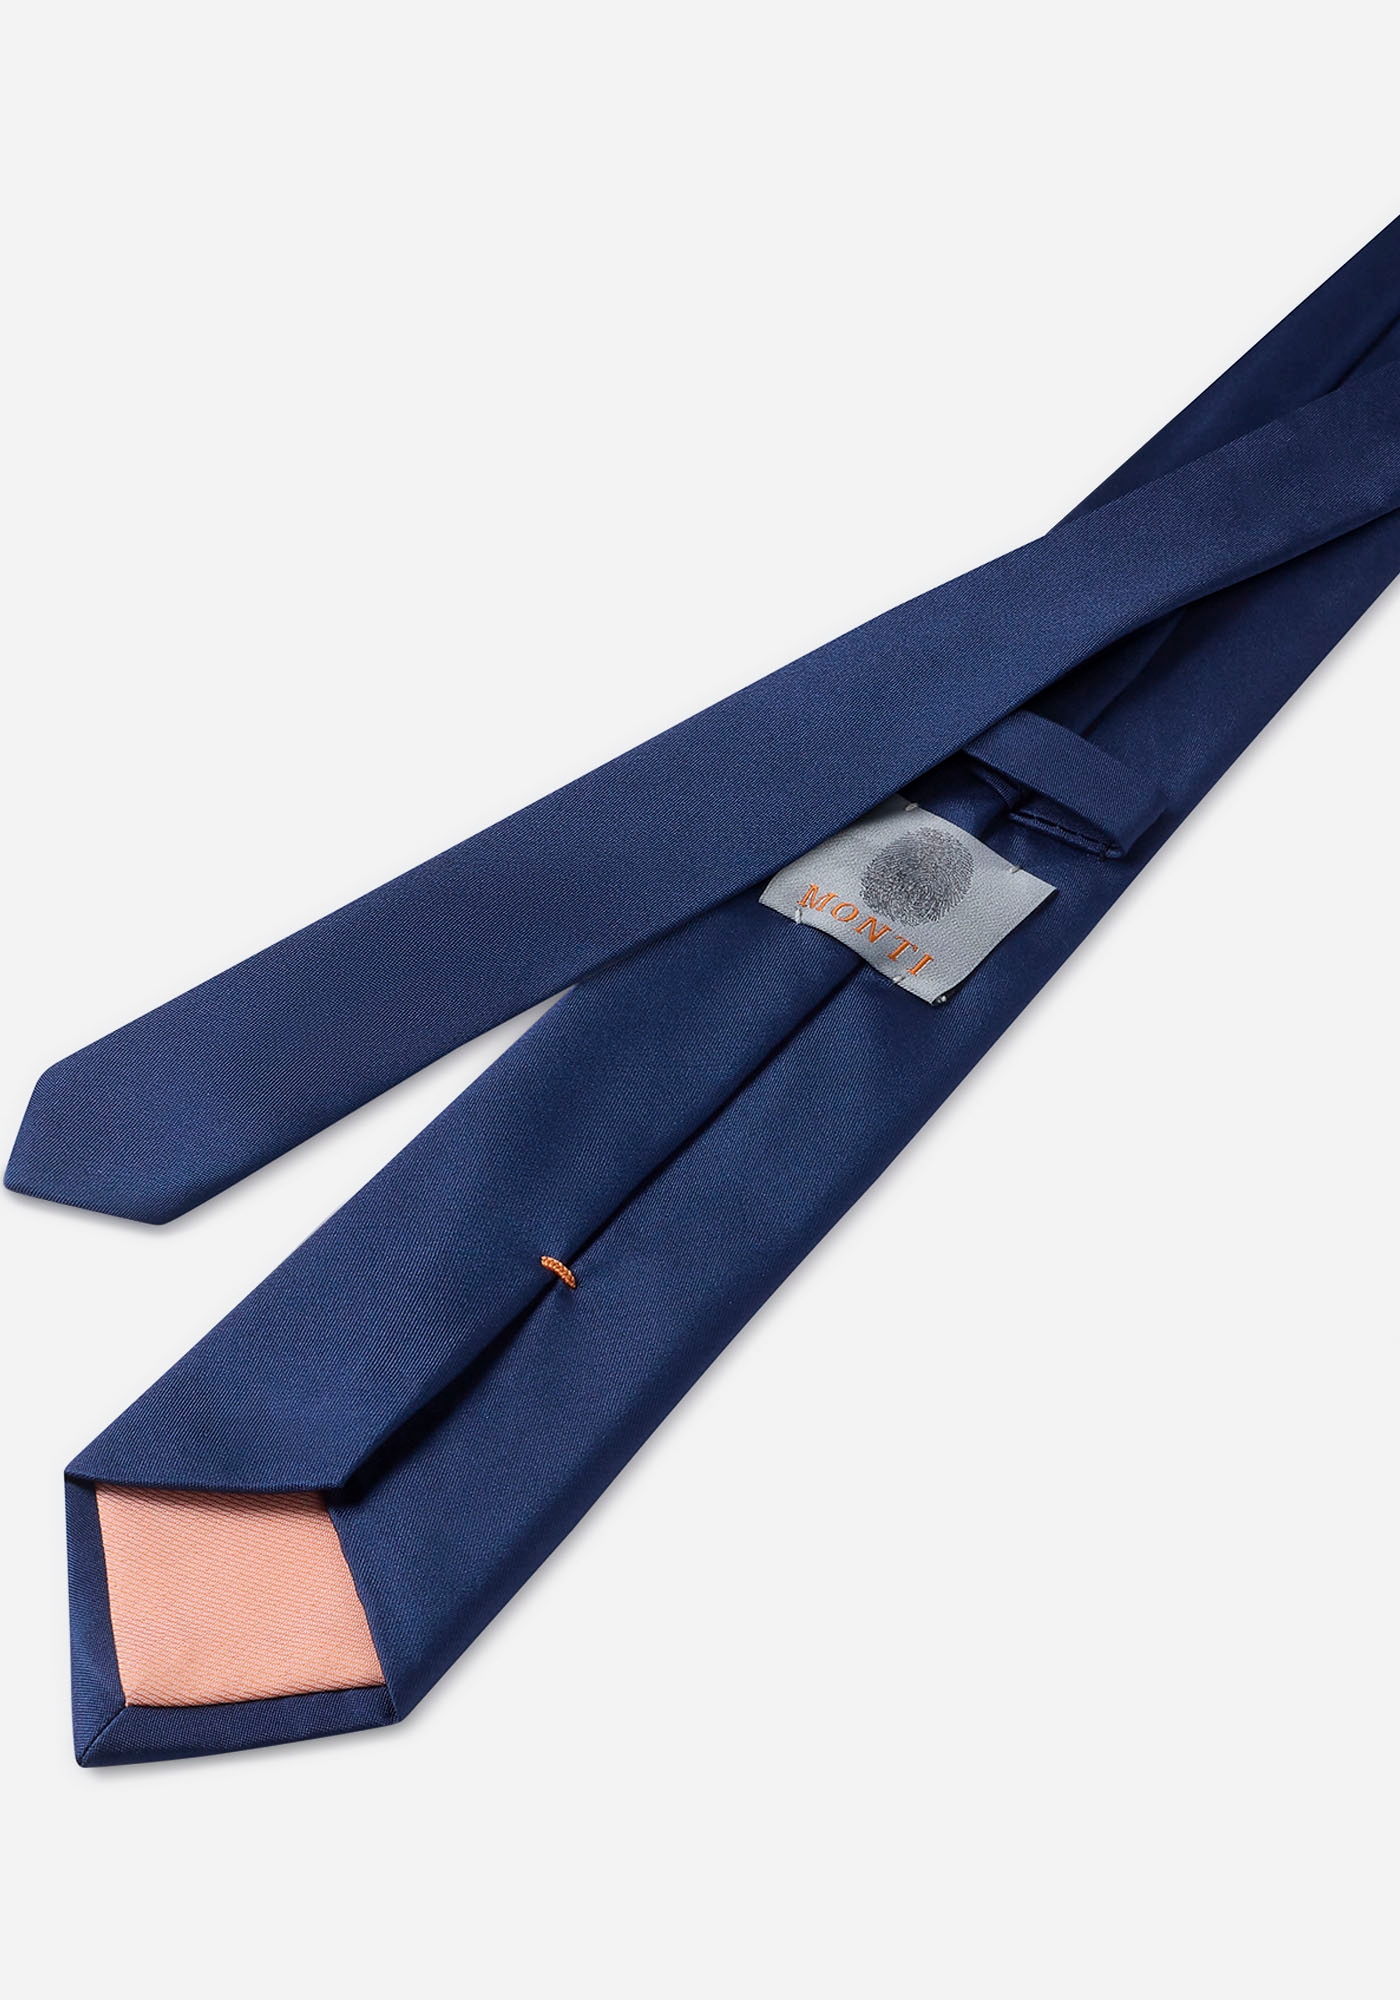 MONTI Krawatte »LUIGI«, mit Wolleinlage für angenehmes Tragegefühl und Formstabilität